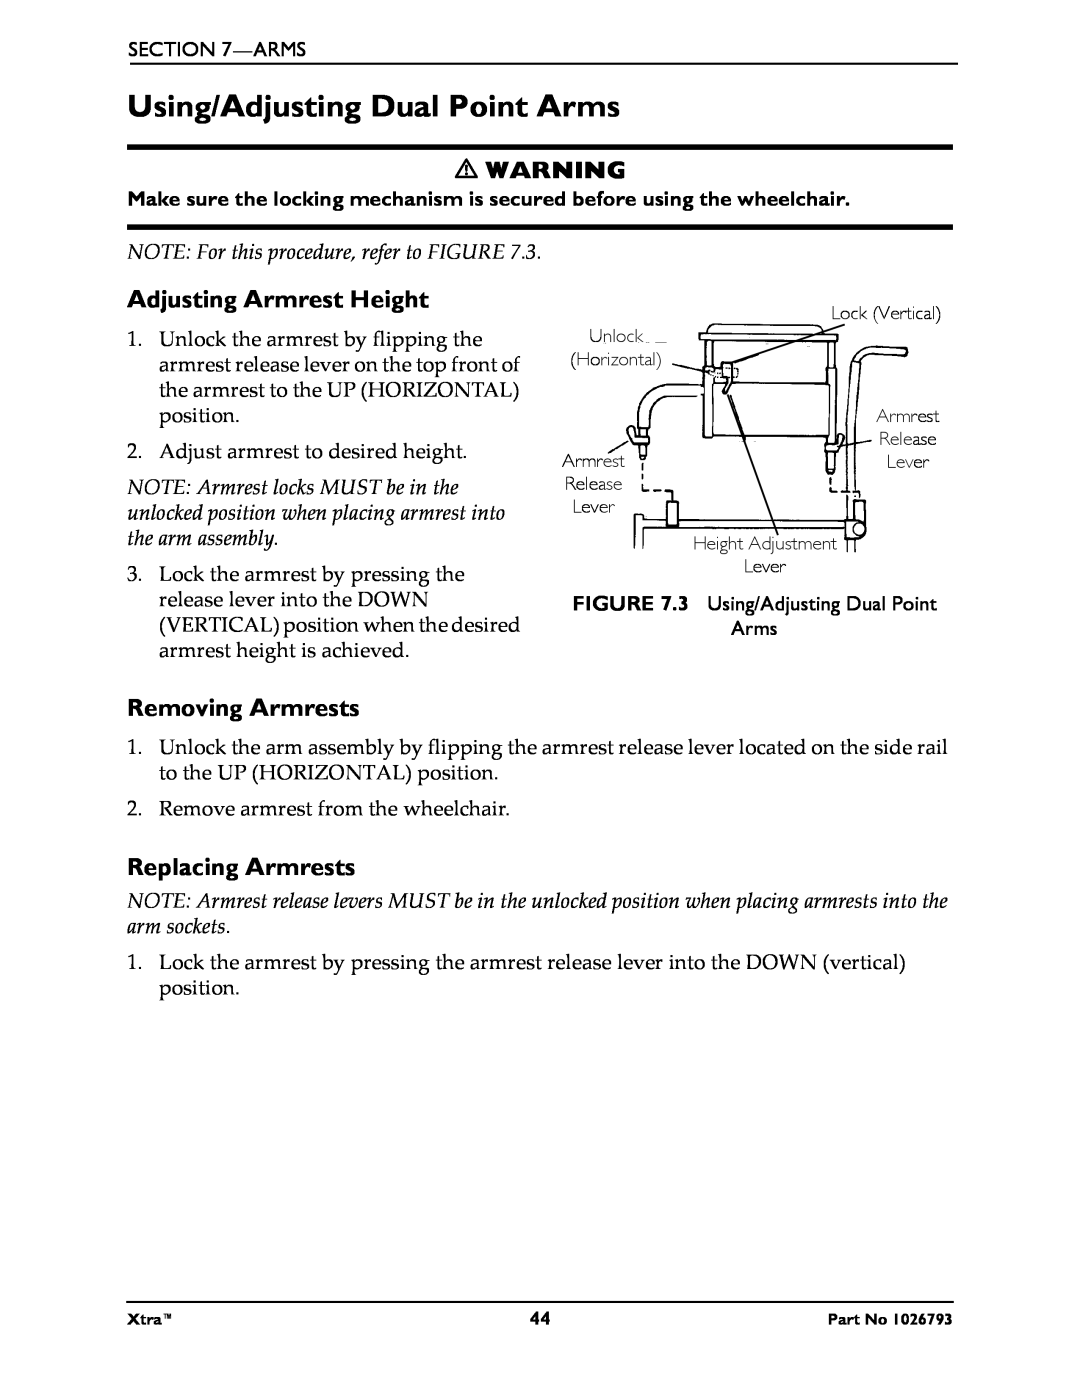 Invacare 1026793 manual Using/Adjusting Dual Point Arms, Adjusting Armrest Height, Removing Armrests, Replacing Armrests 